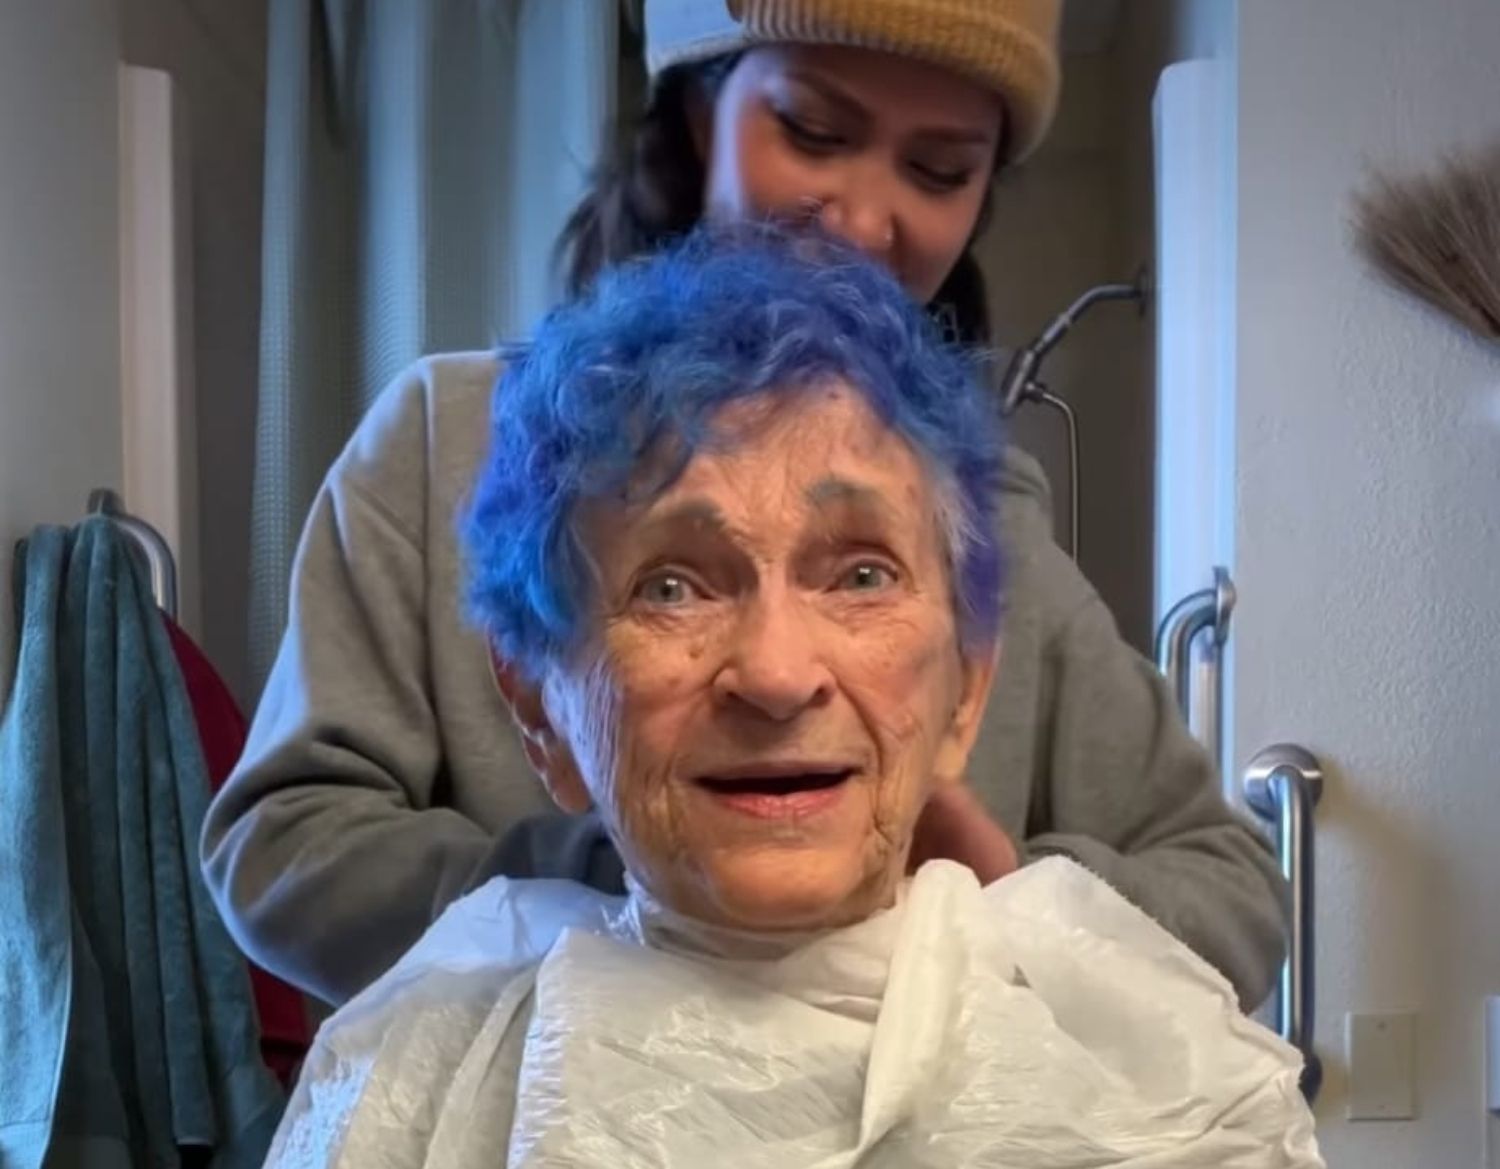 Joven estilista muestra los impresionantes 'looks' de su abuela de 88 años